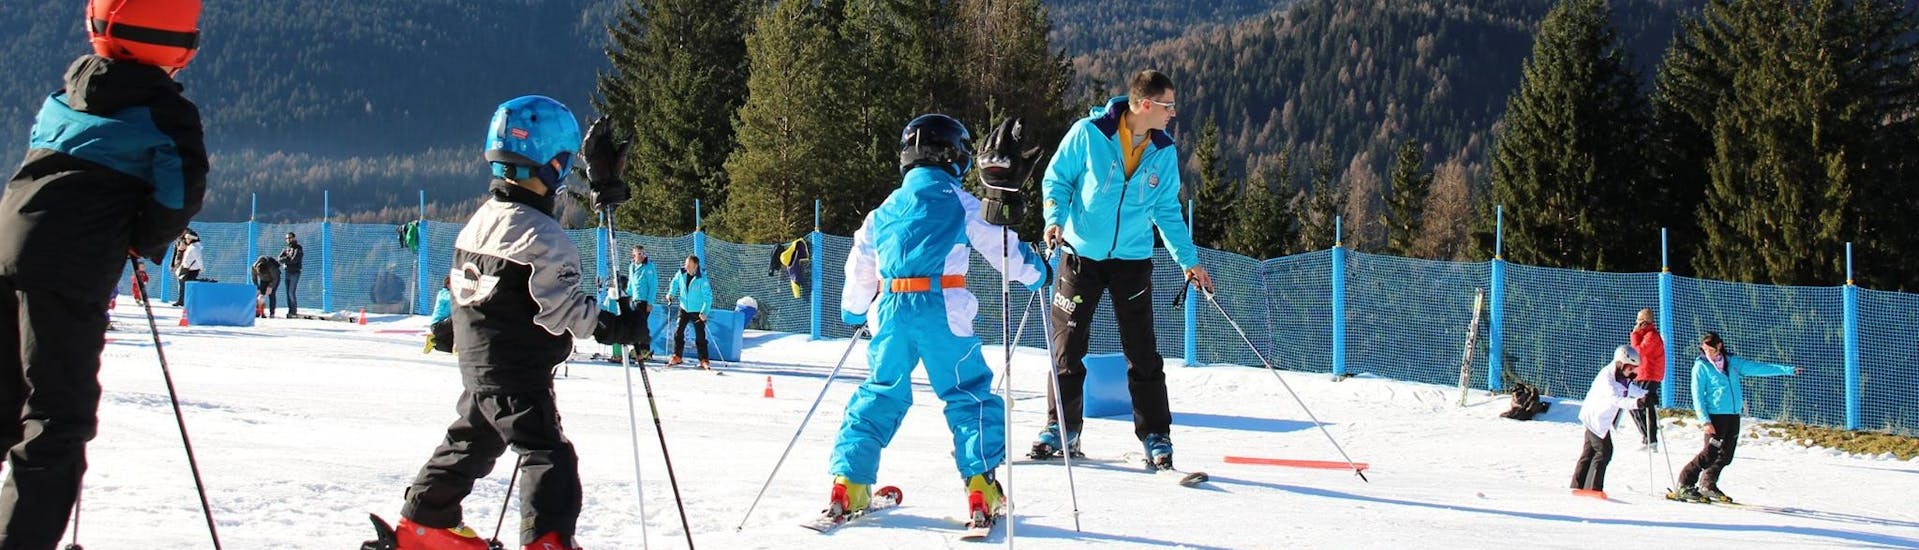 Tre bambini ed un maestro durante le Lezioni private di sci per bambini per tutti i livelli (dai 3 anni) con Scuola Sci Antelao San Vito di Cadore.